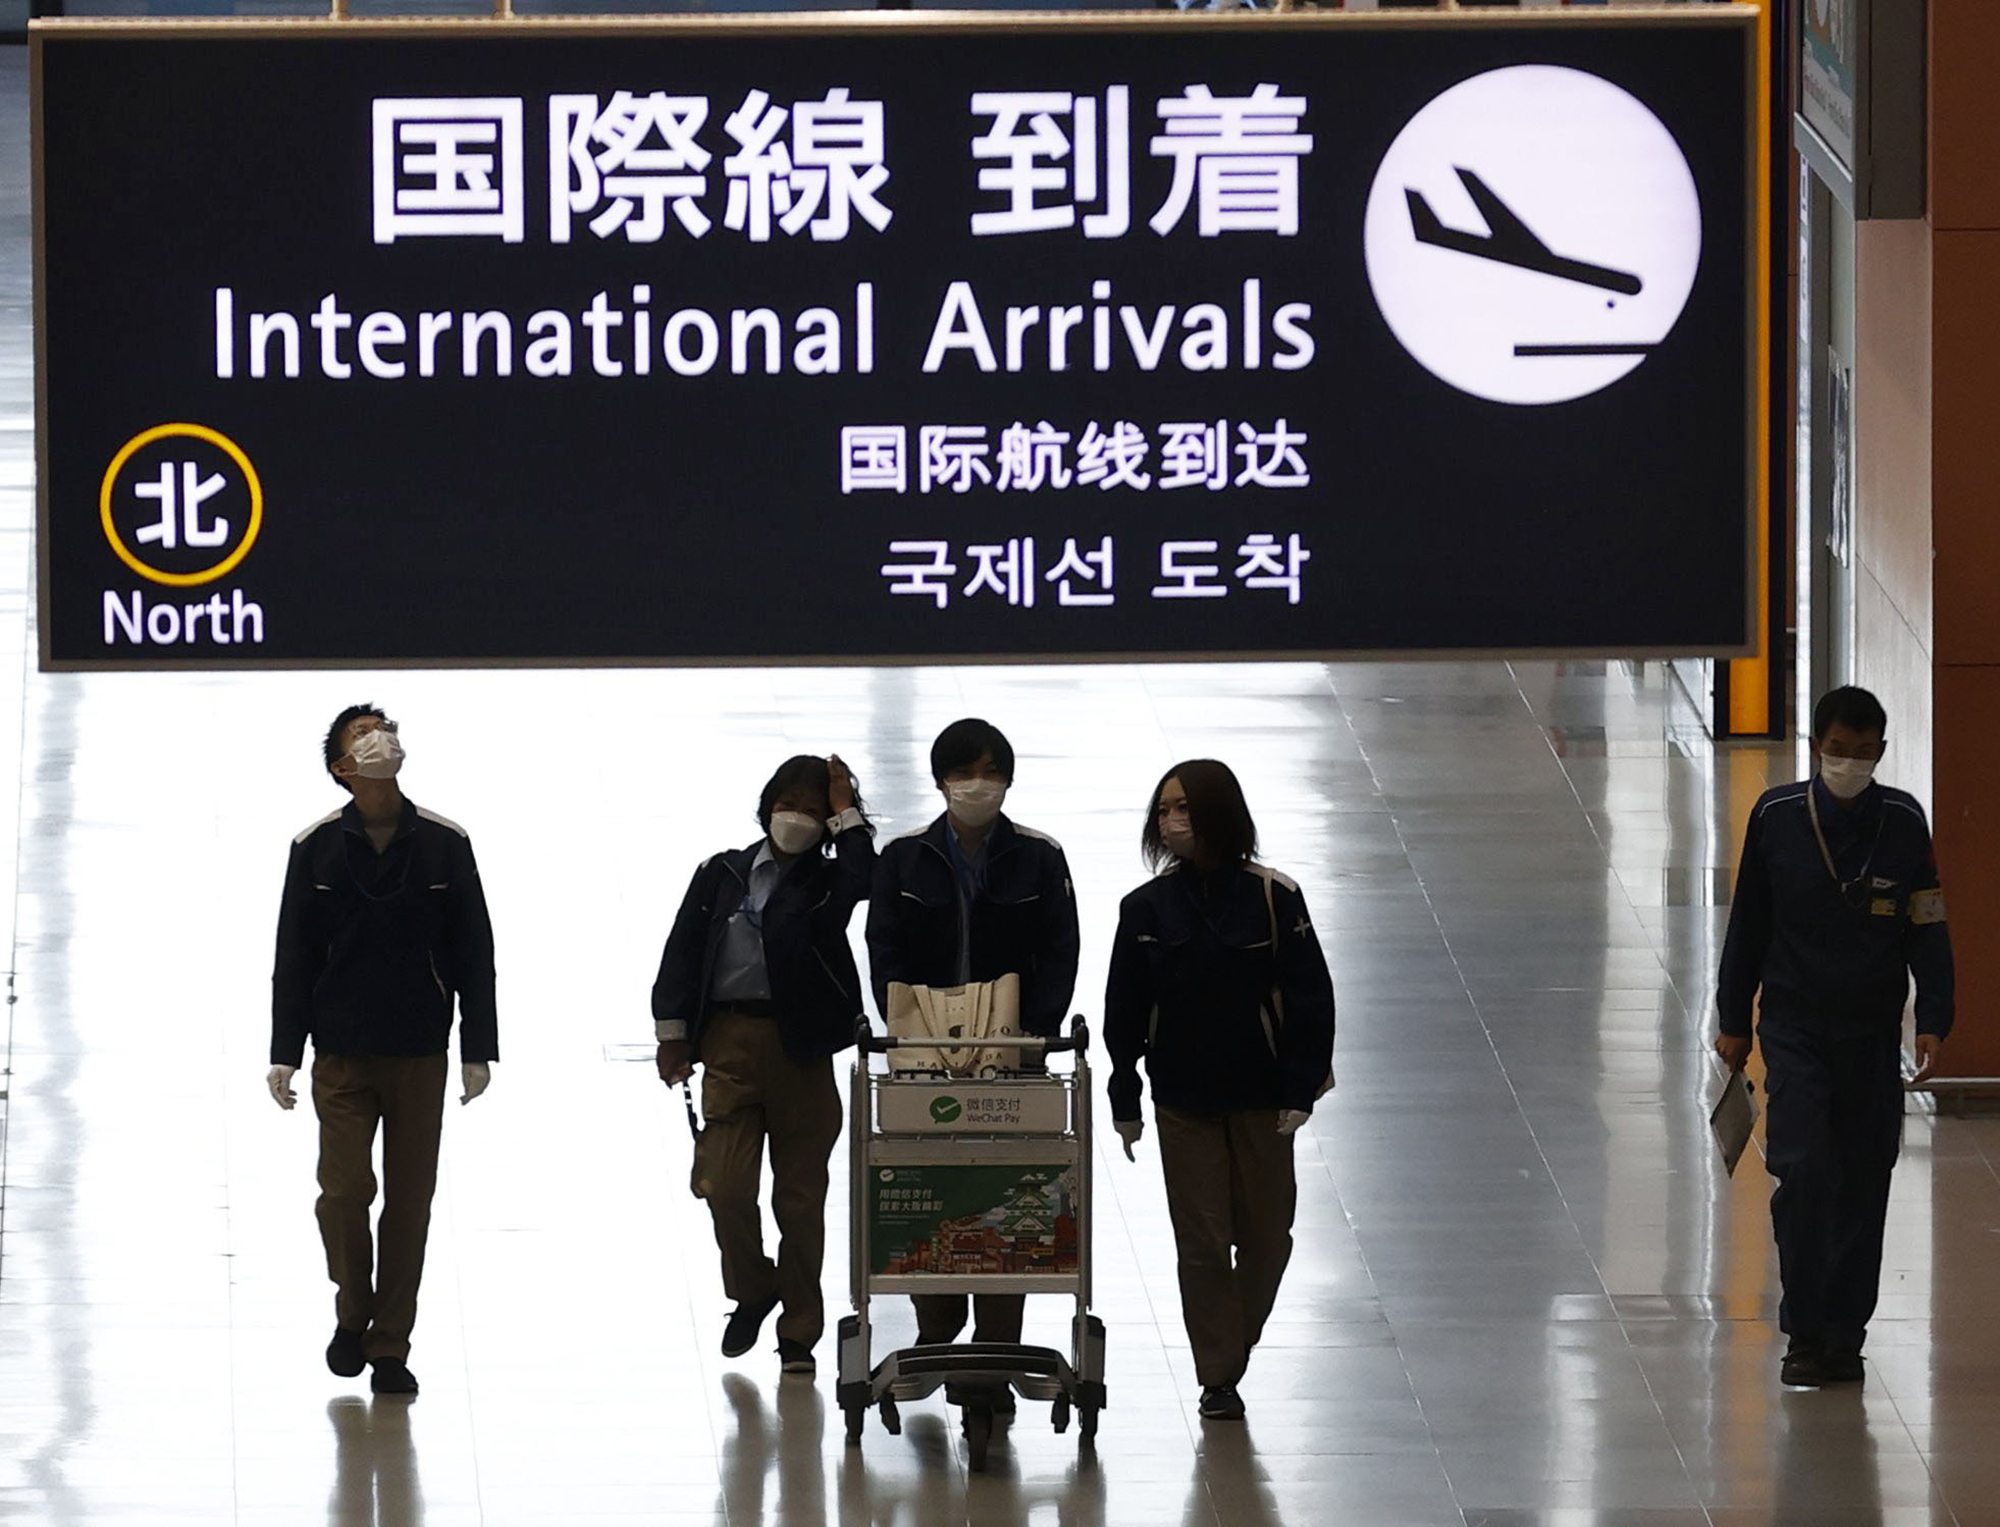 近期日币下跌，国际游客增多让日本一线城市机场出现壅塞情况。图为关西机场资料照片。美联社